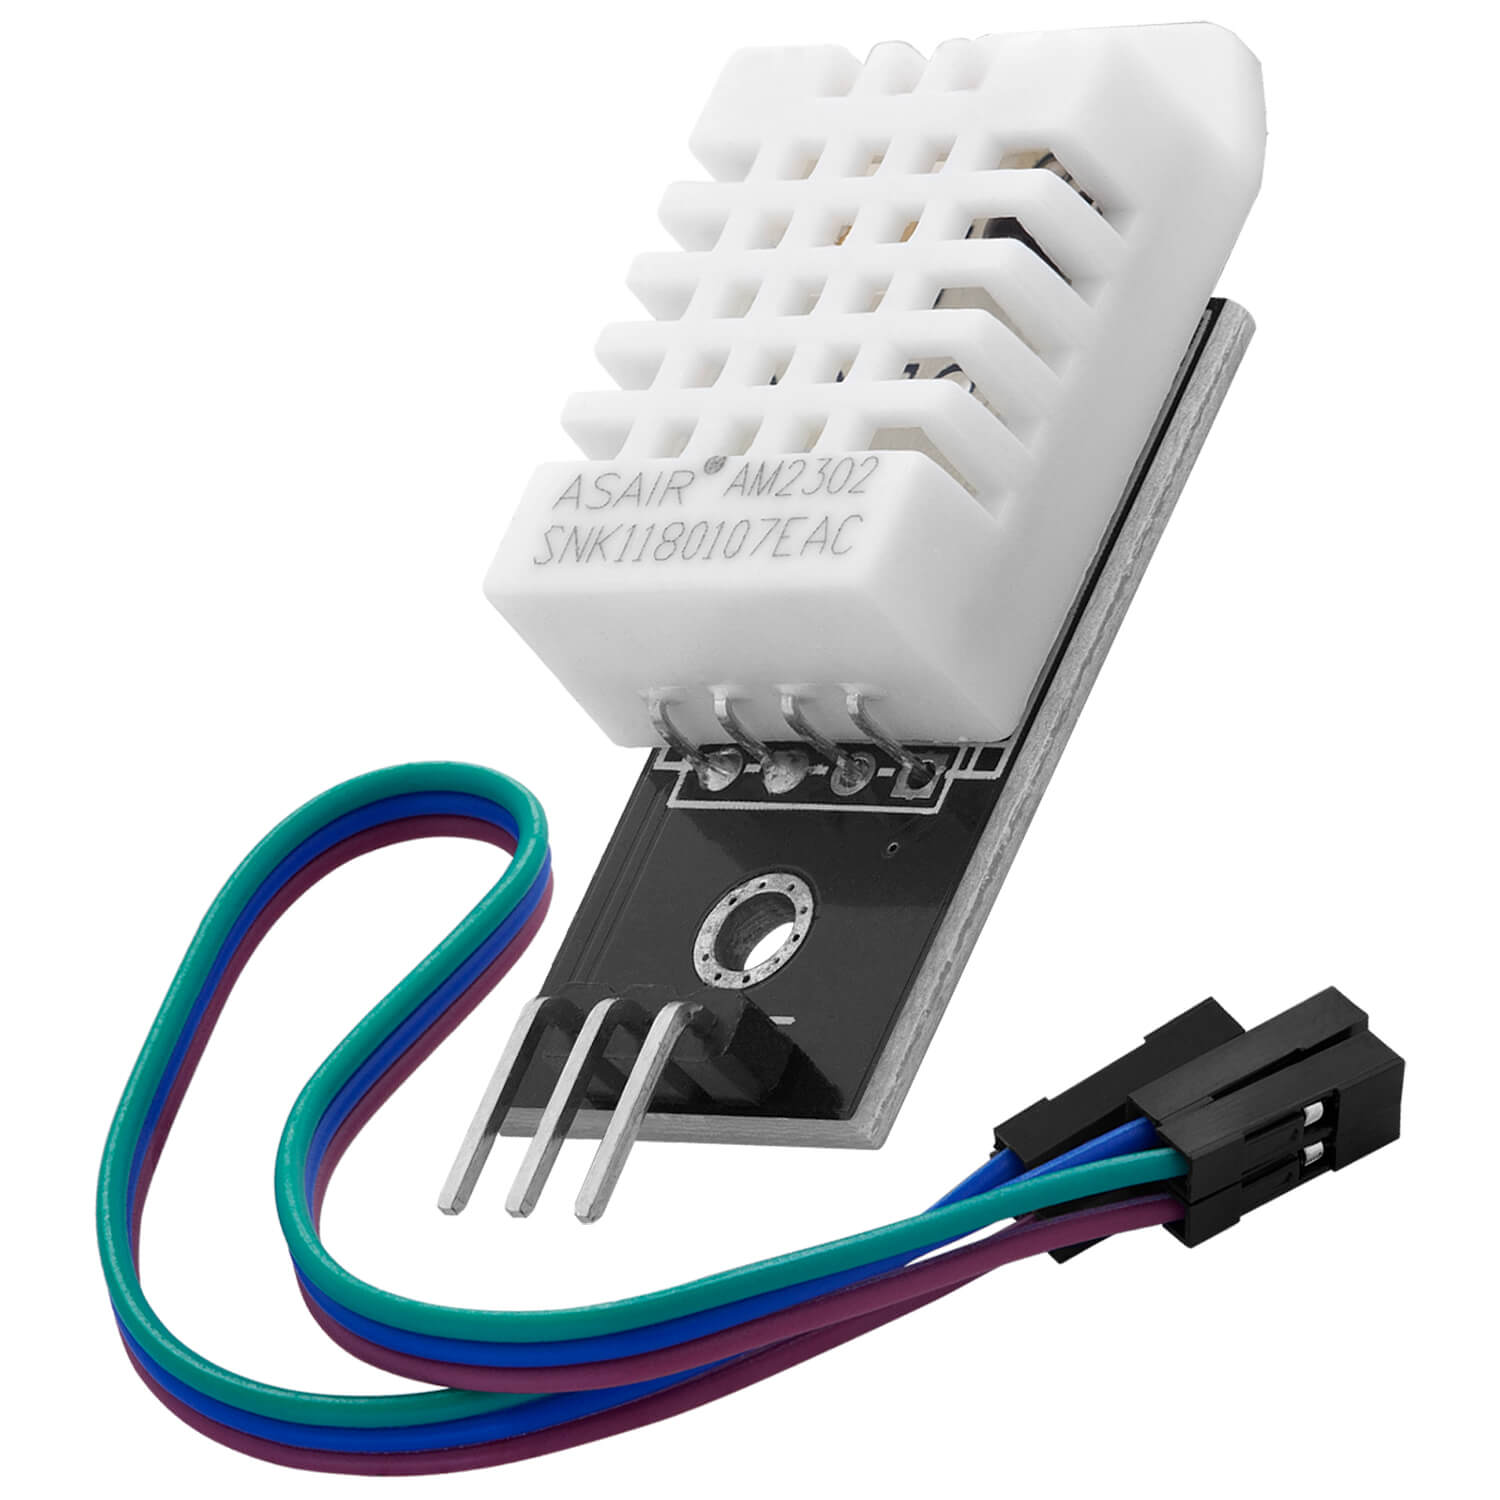 DHT22 AM2302 Temperatursensor und Luftfeuchtigkeitssensor mit Platine und Kabel kompatibel mit Arduino und Raspberry Pi - AZ-Delivery